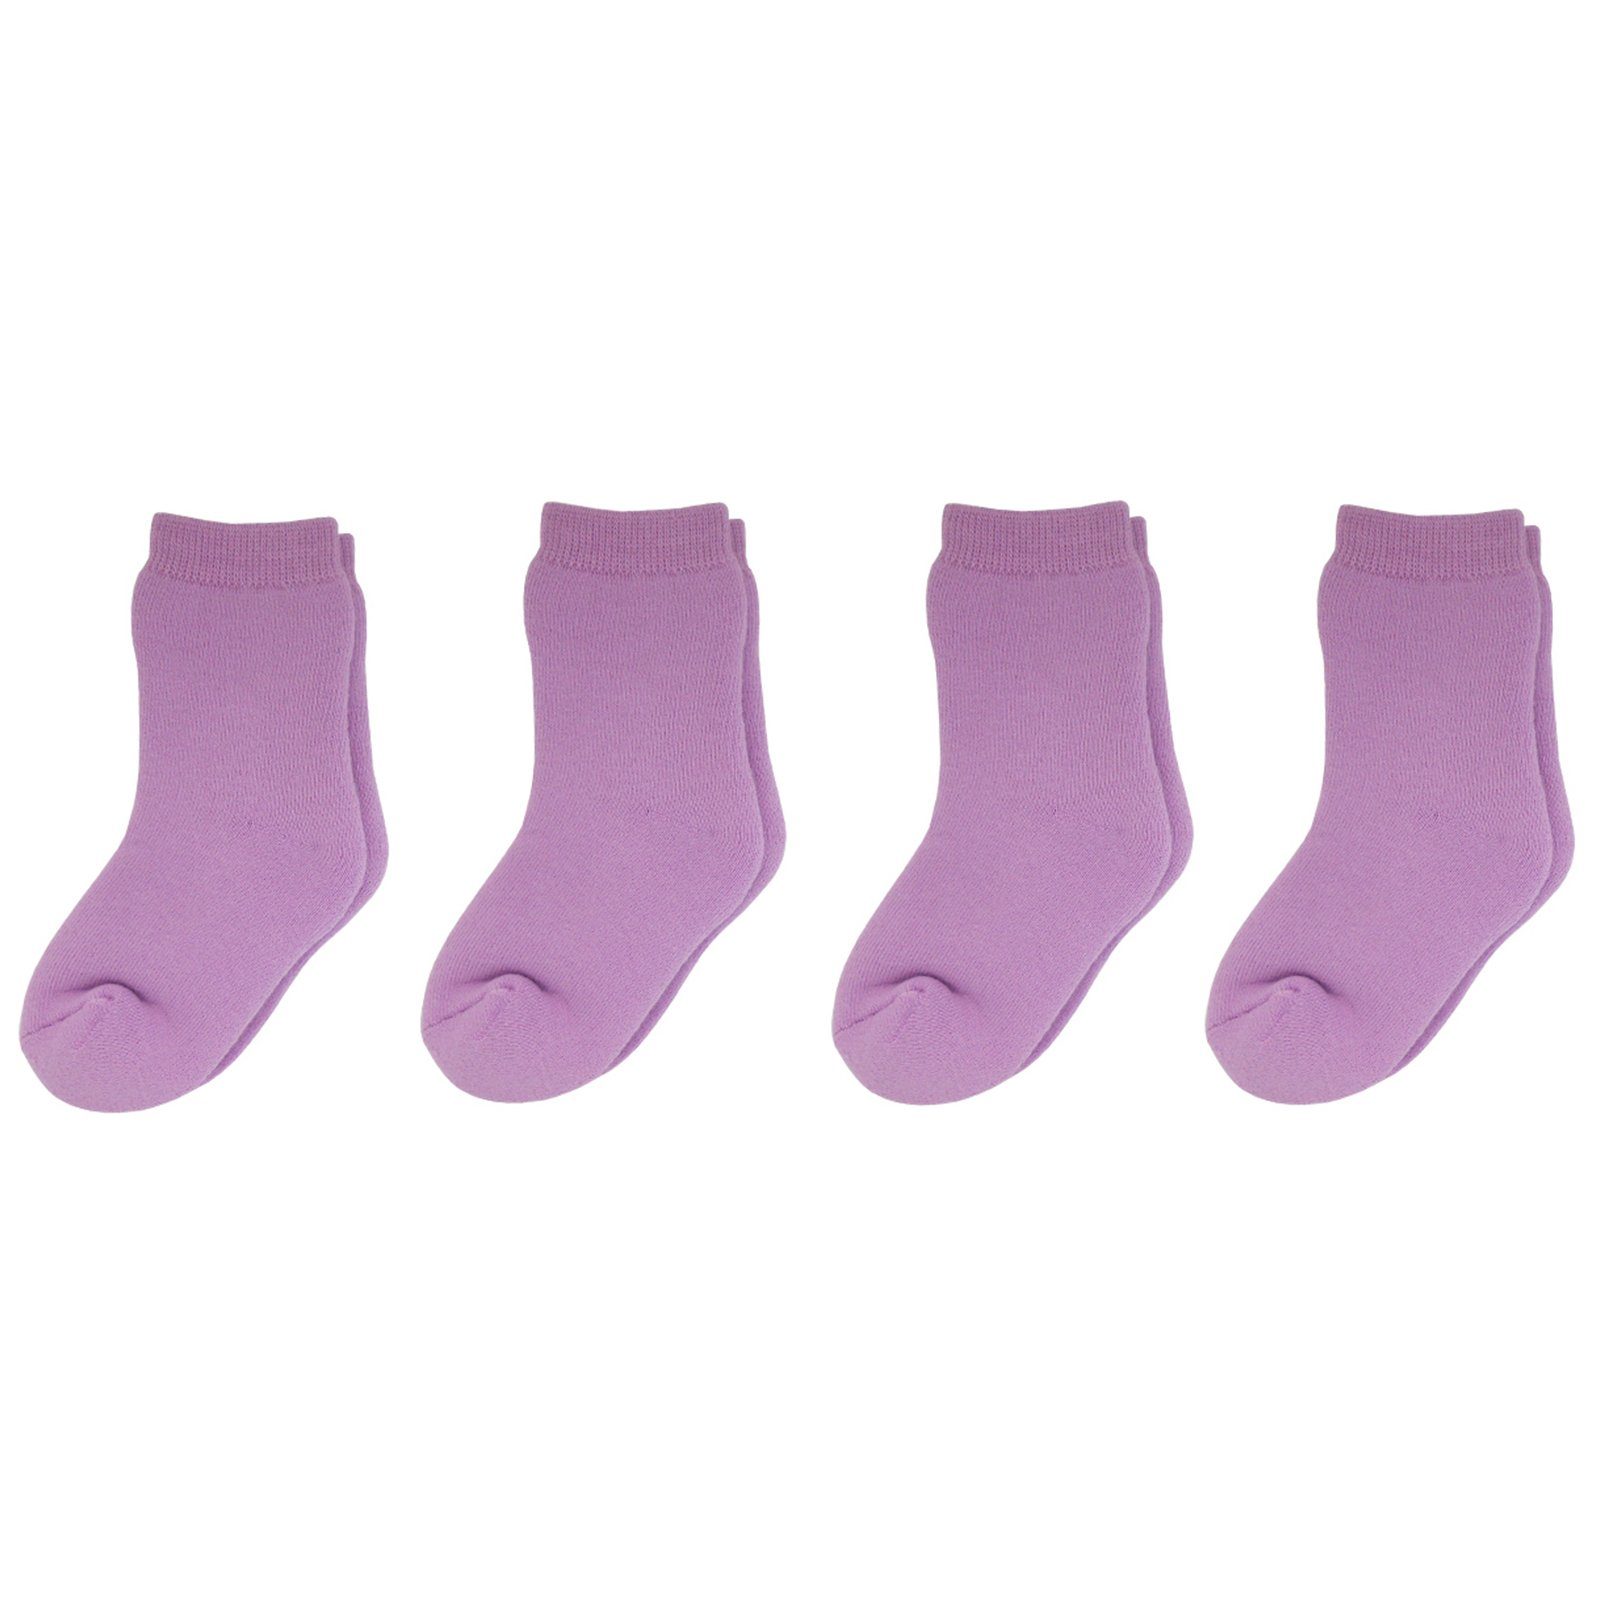 braun Elastisch weiche 4er Vollplüsch Pack Socken Kinder Yalion® Yalion mit Kurzsocken